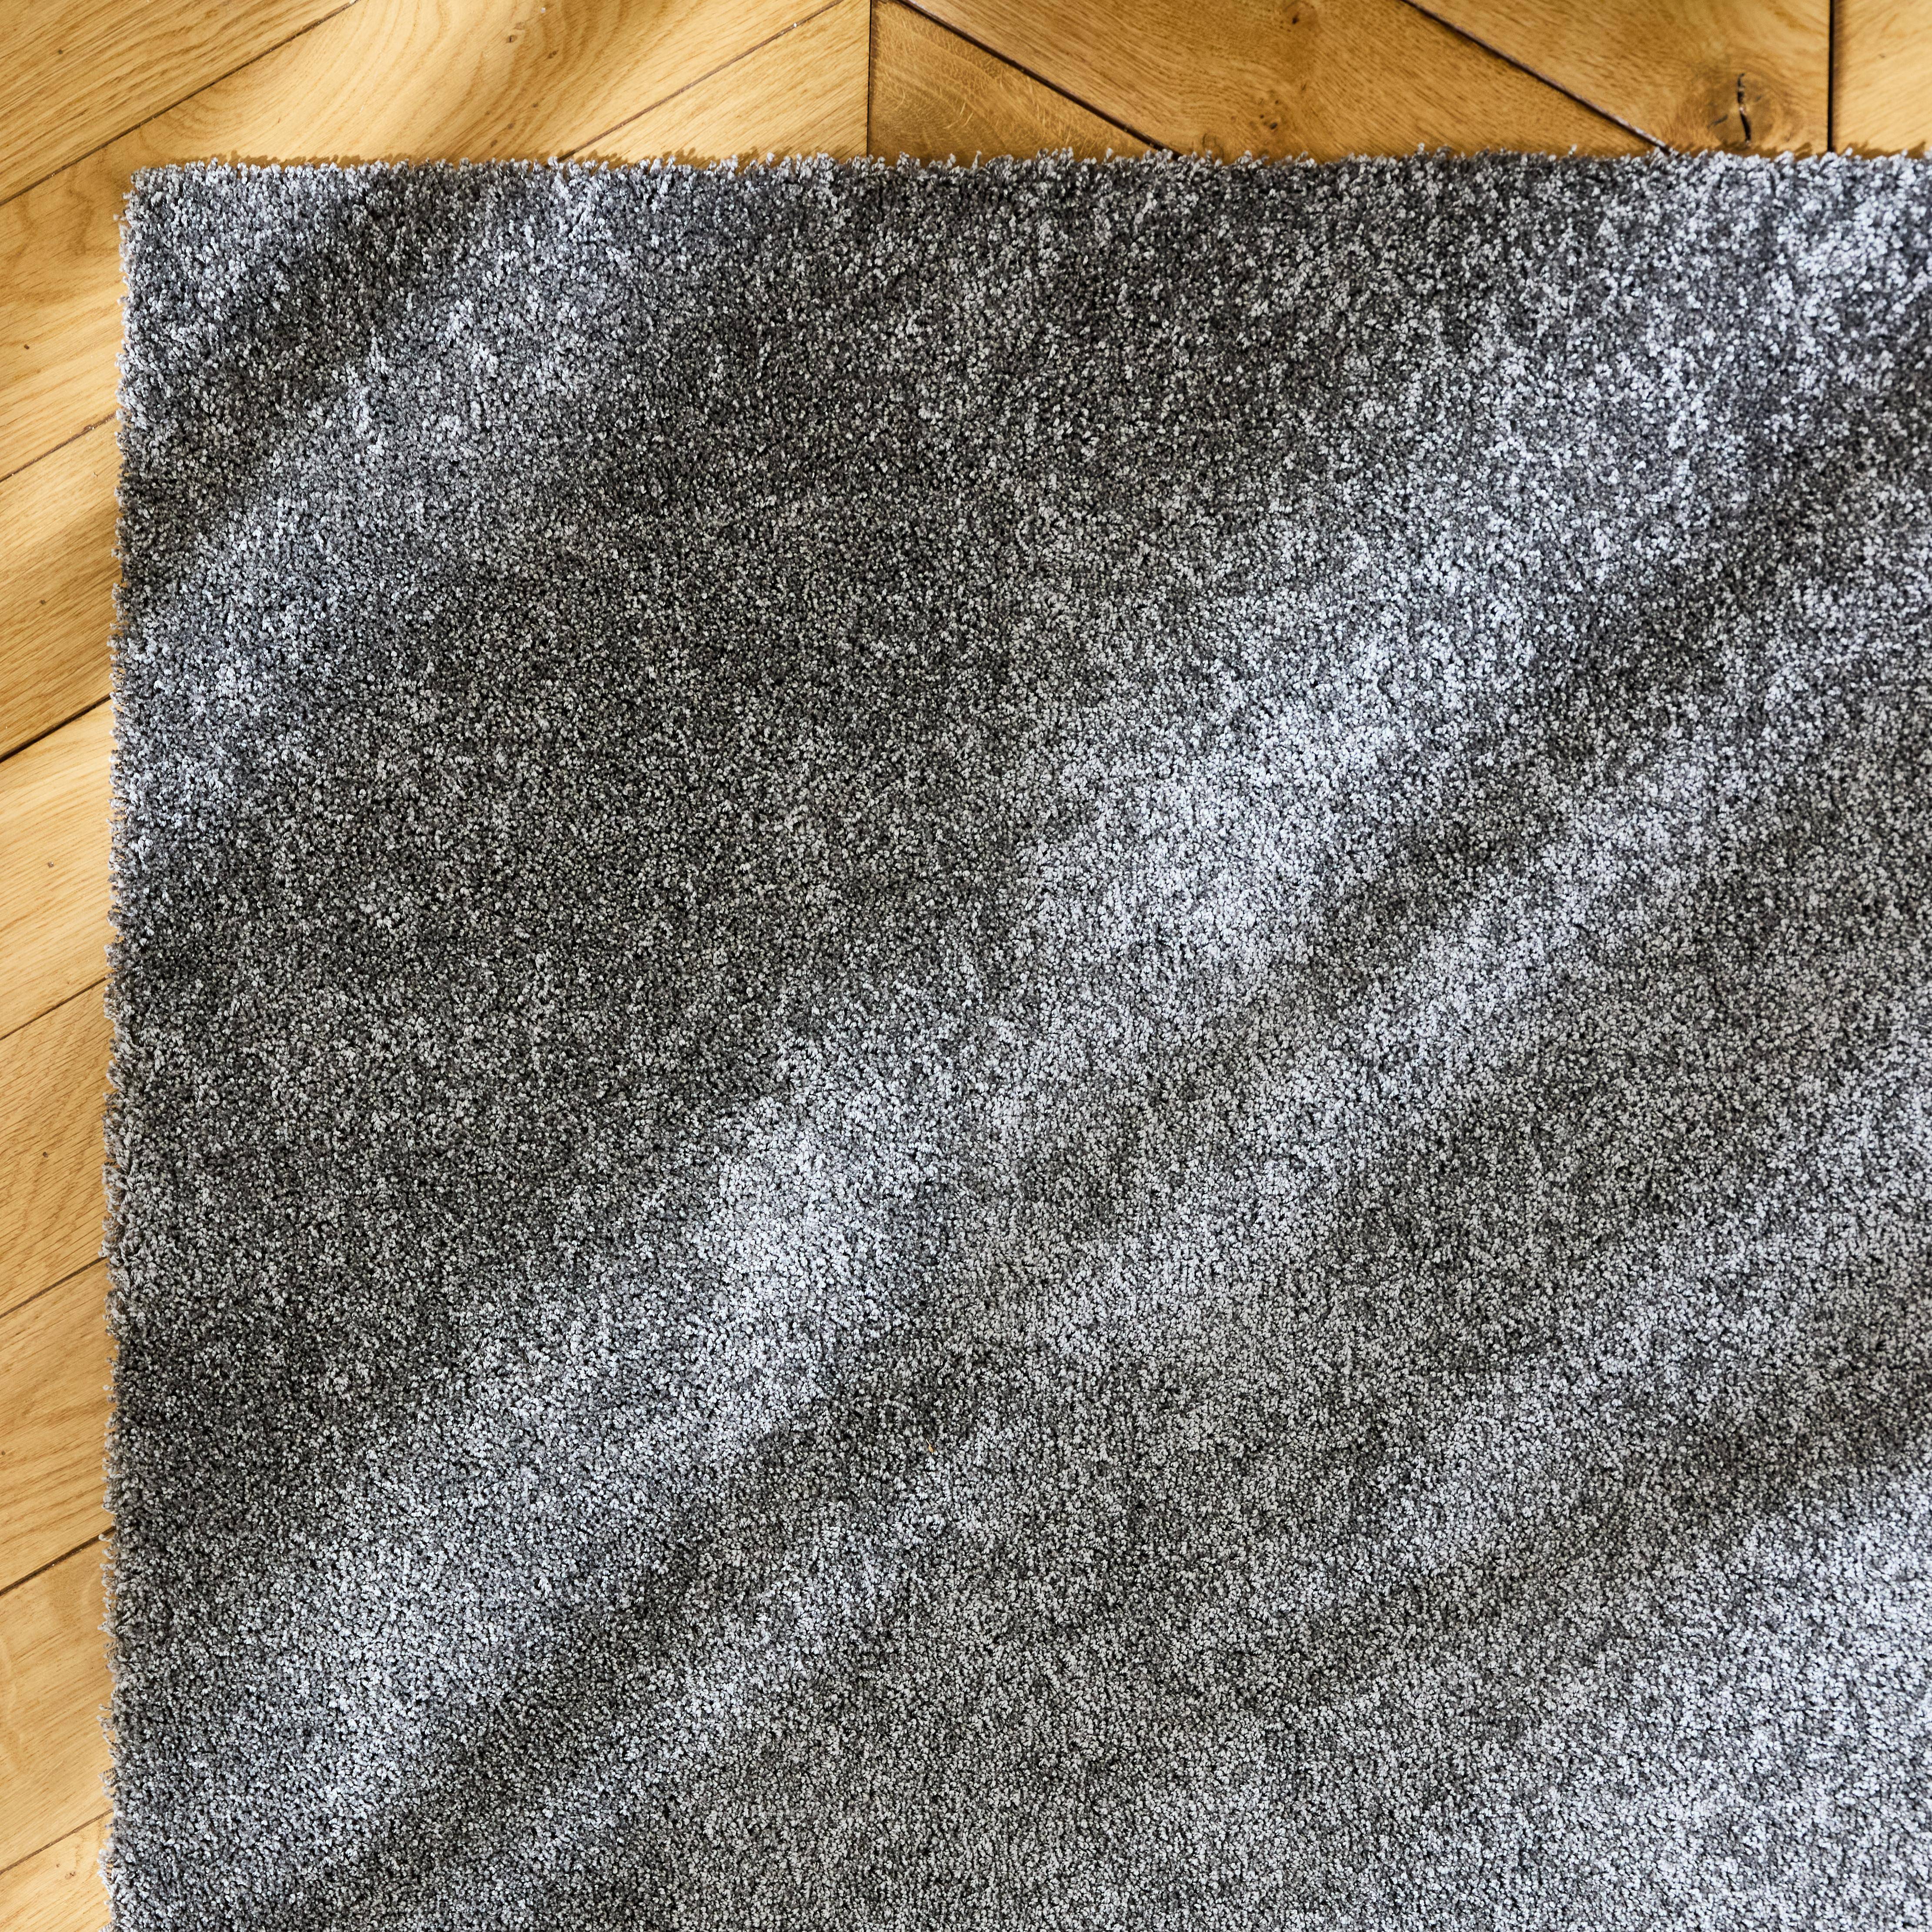 Tappeto per interni in velluto riccio grigio antracite, 120x170cm, a pelo corto con effetto pelo ad anello,sweeek,Photo2